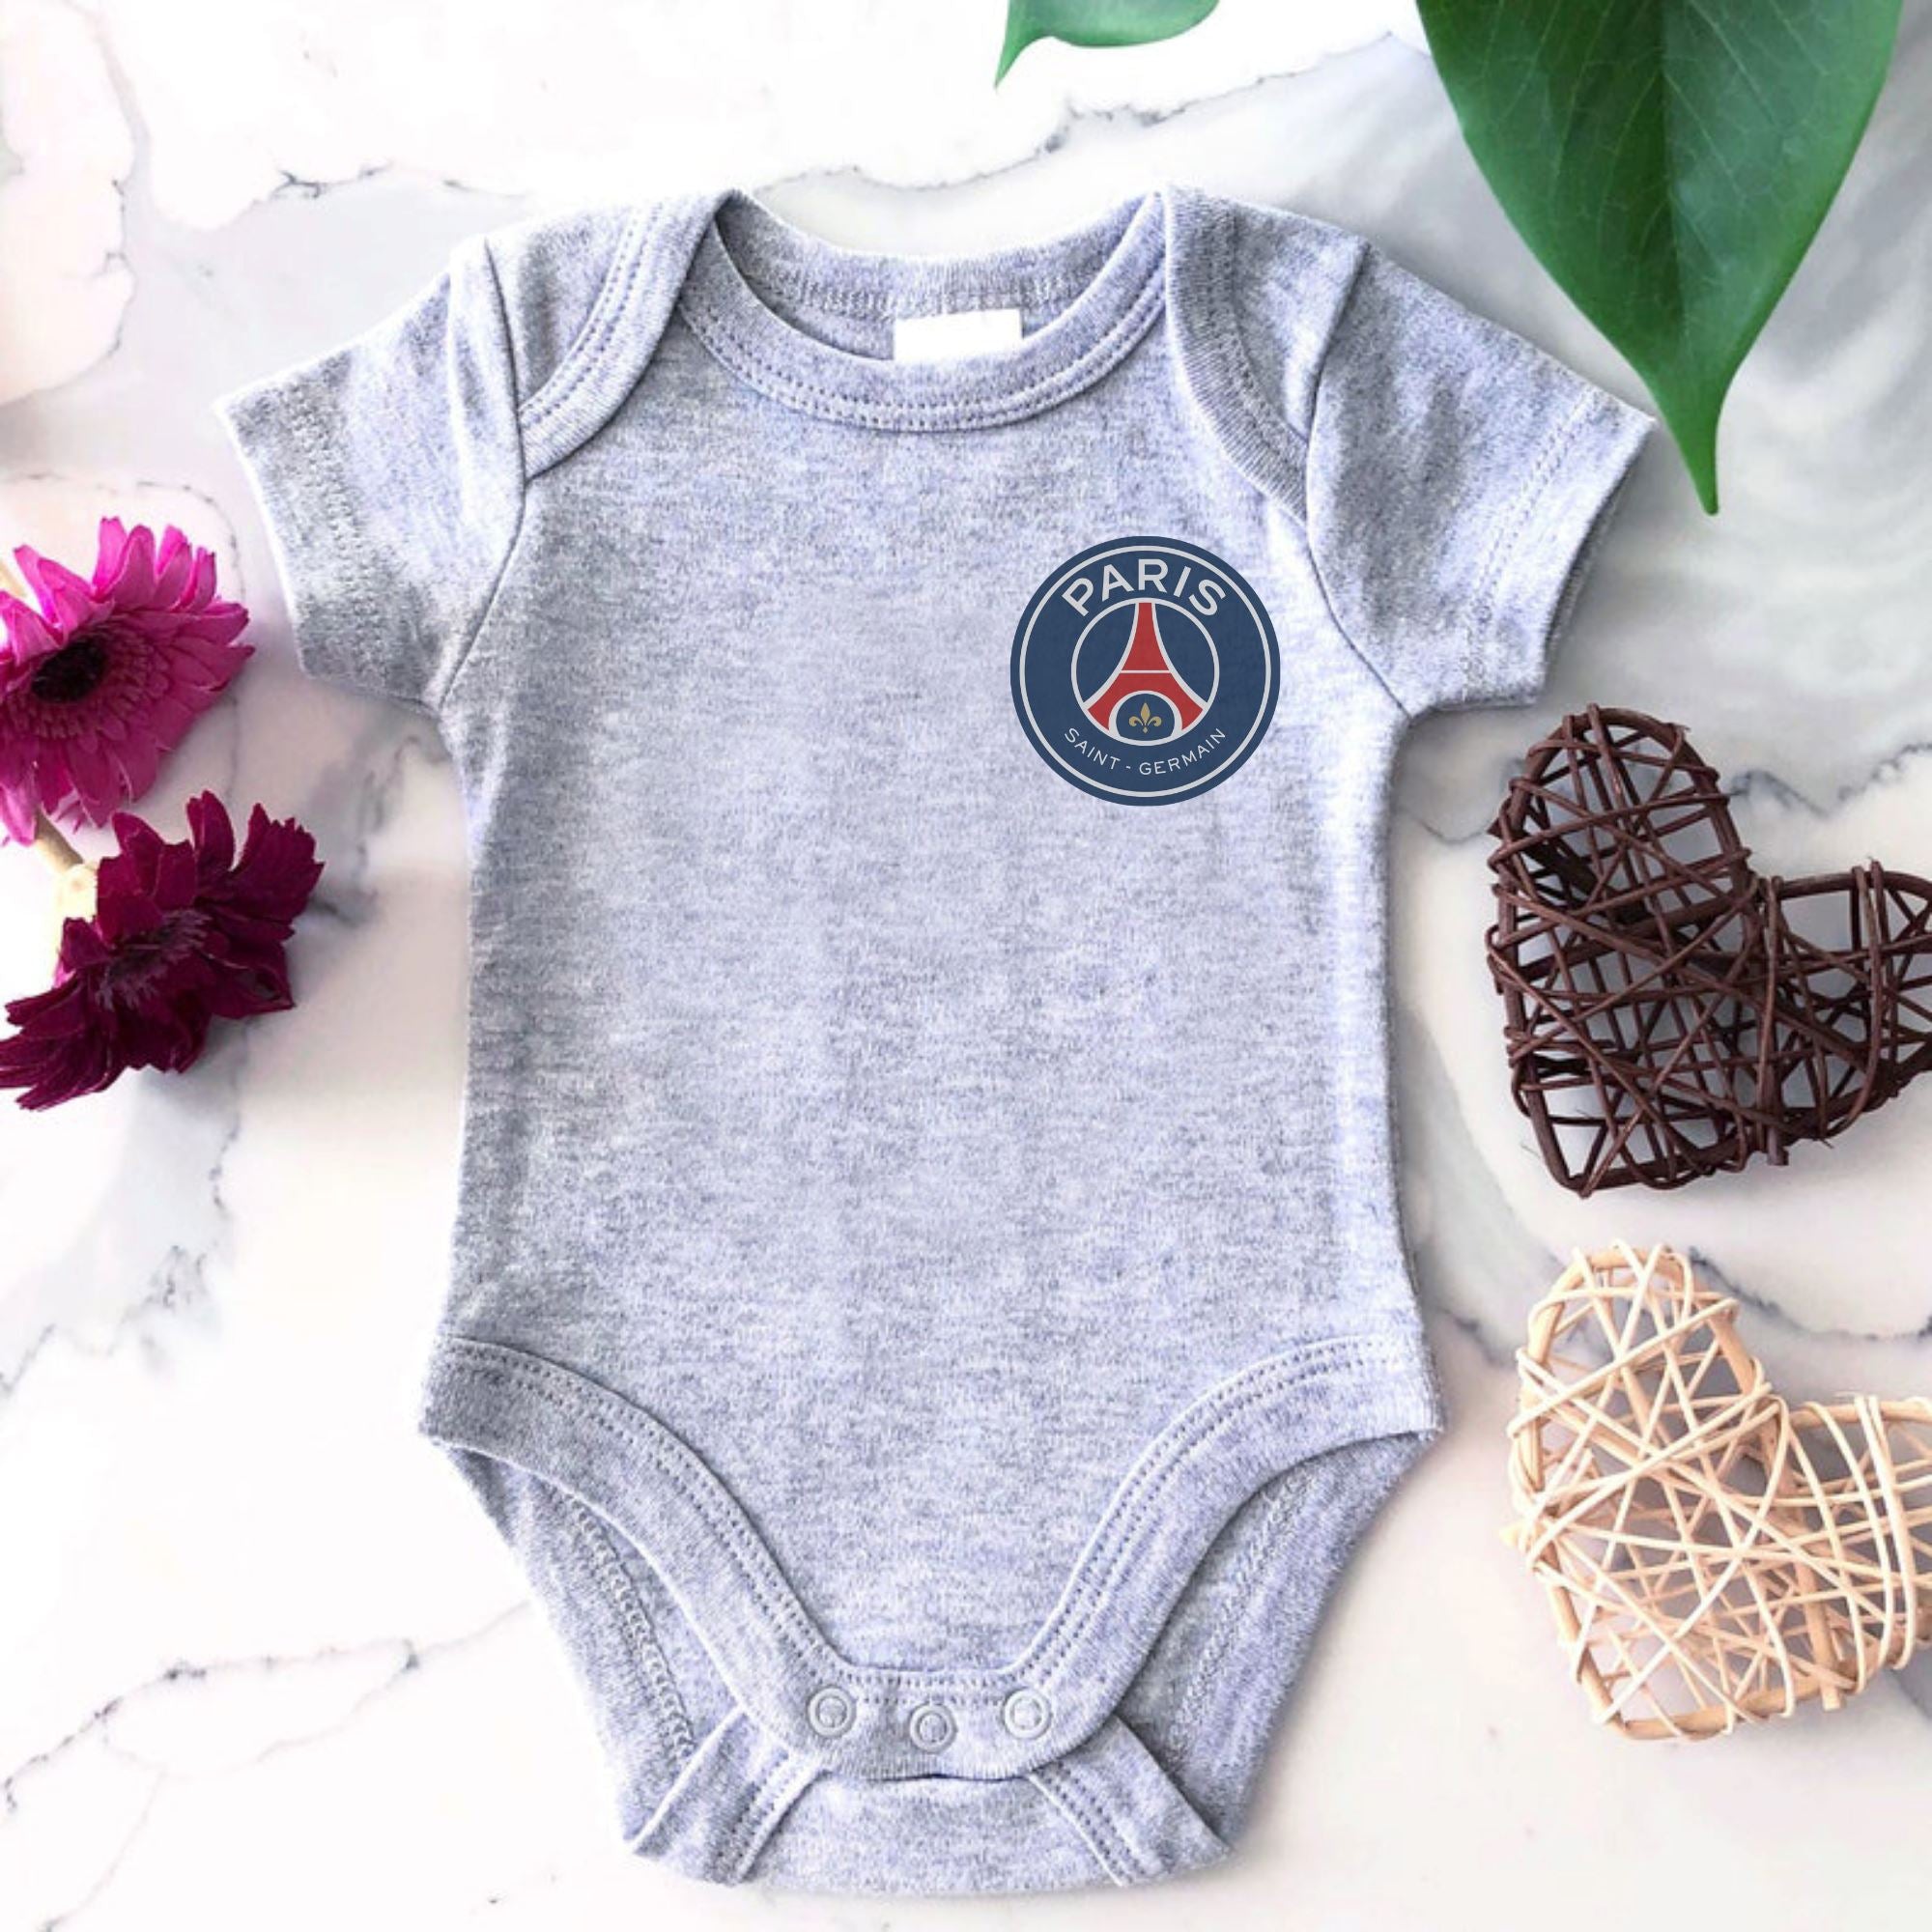 Paris St. Germain Baby Bodysuit - ITASPORT